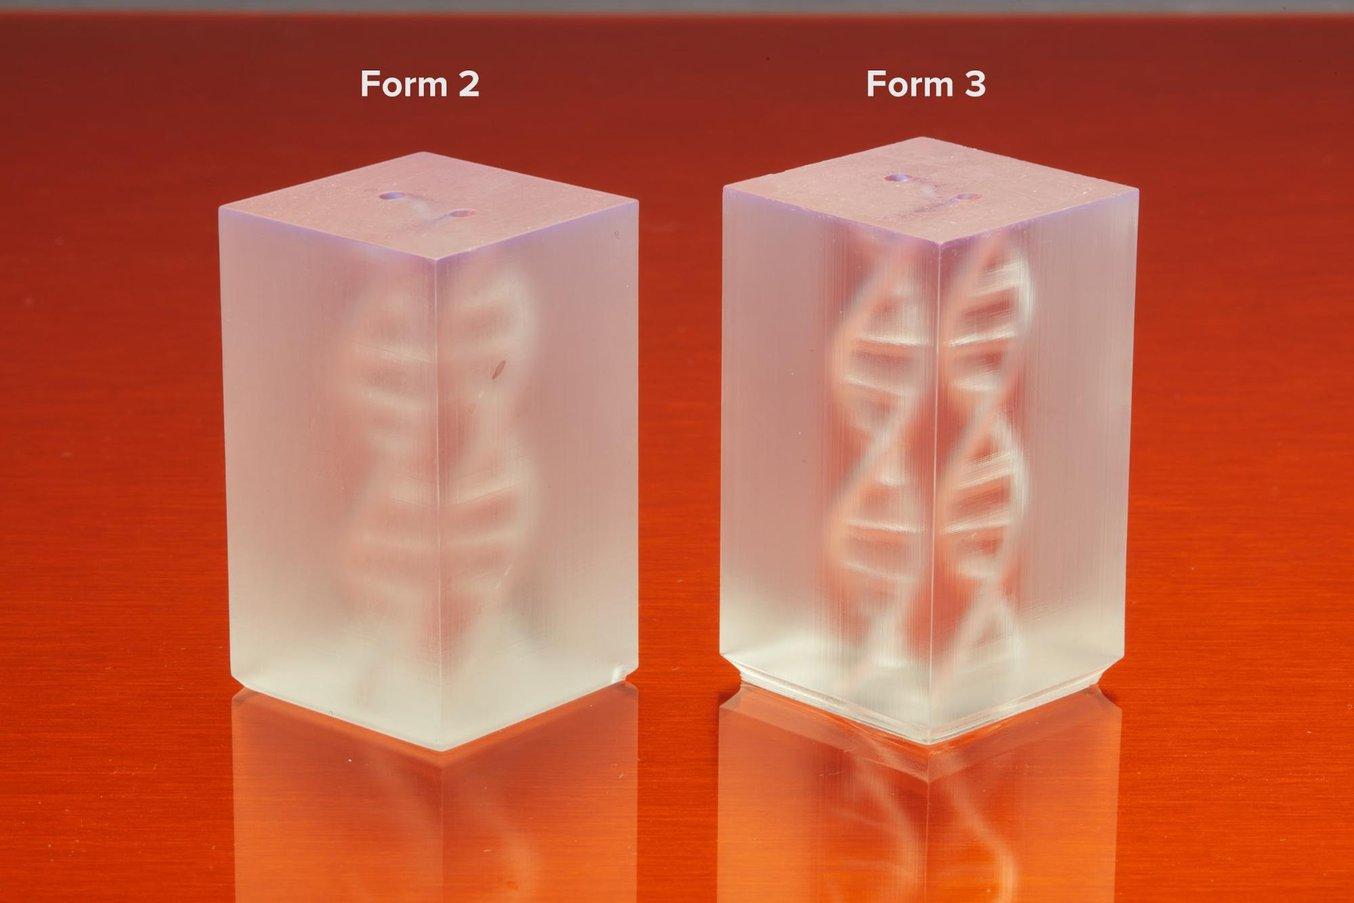 Der flexible Harztank beim LFS 3D-Druck verringert Abzugskräfte, was zu transparenteren Teilen mit glatter Oberfläche führt, wie bei diesen Modellen aus Clear Resin zu sehen.